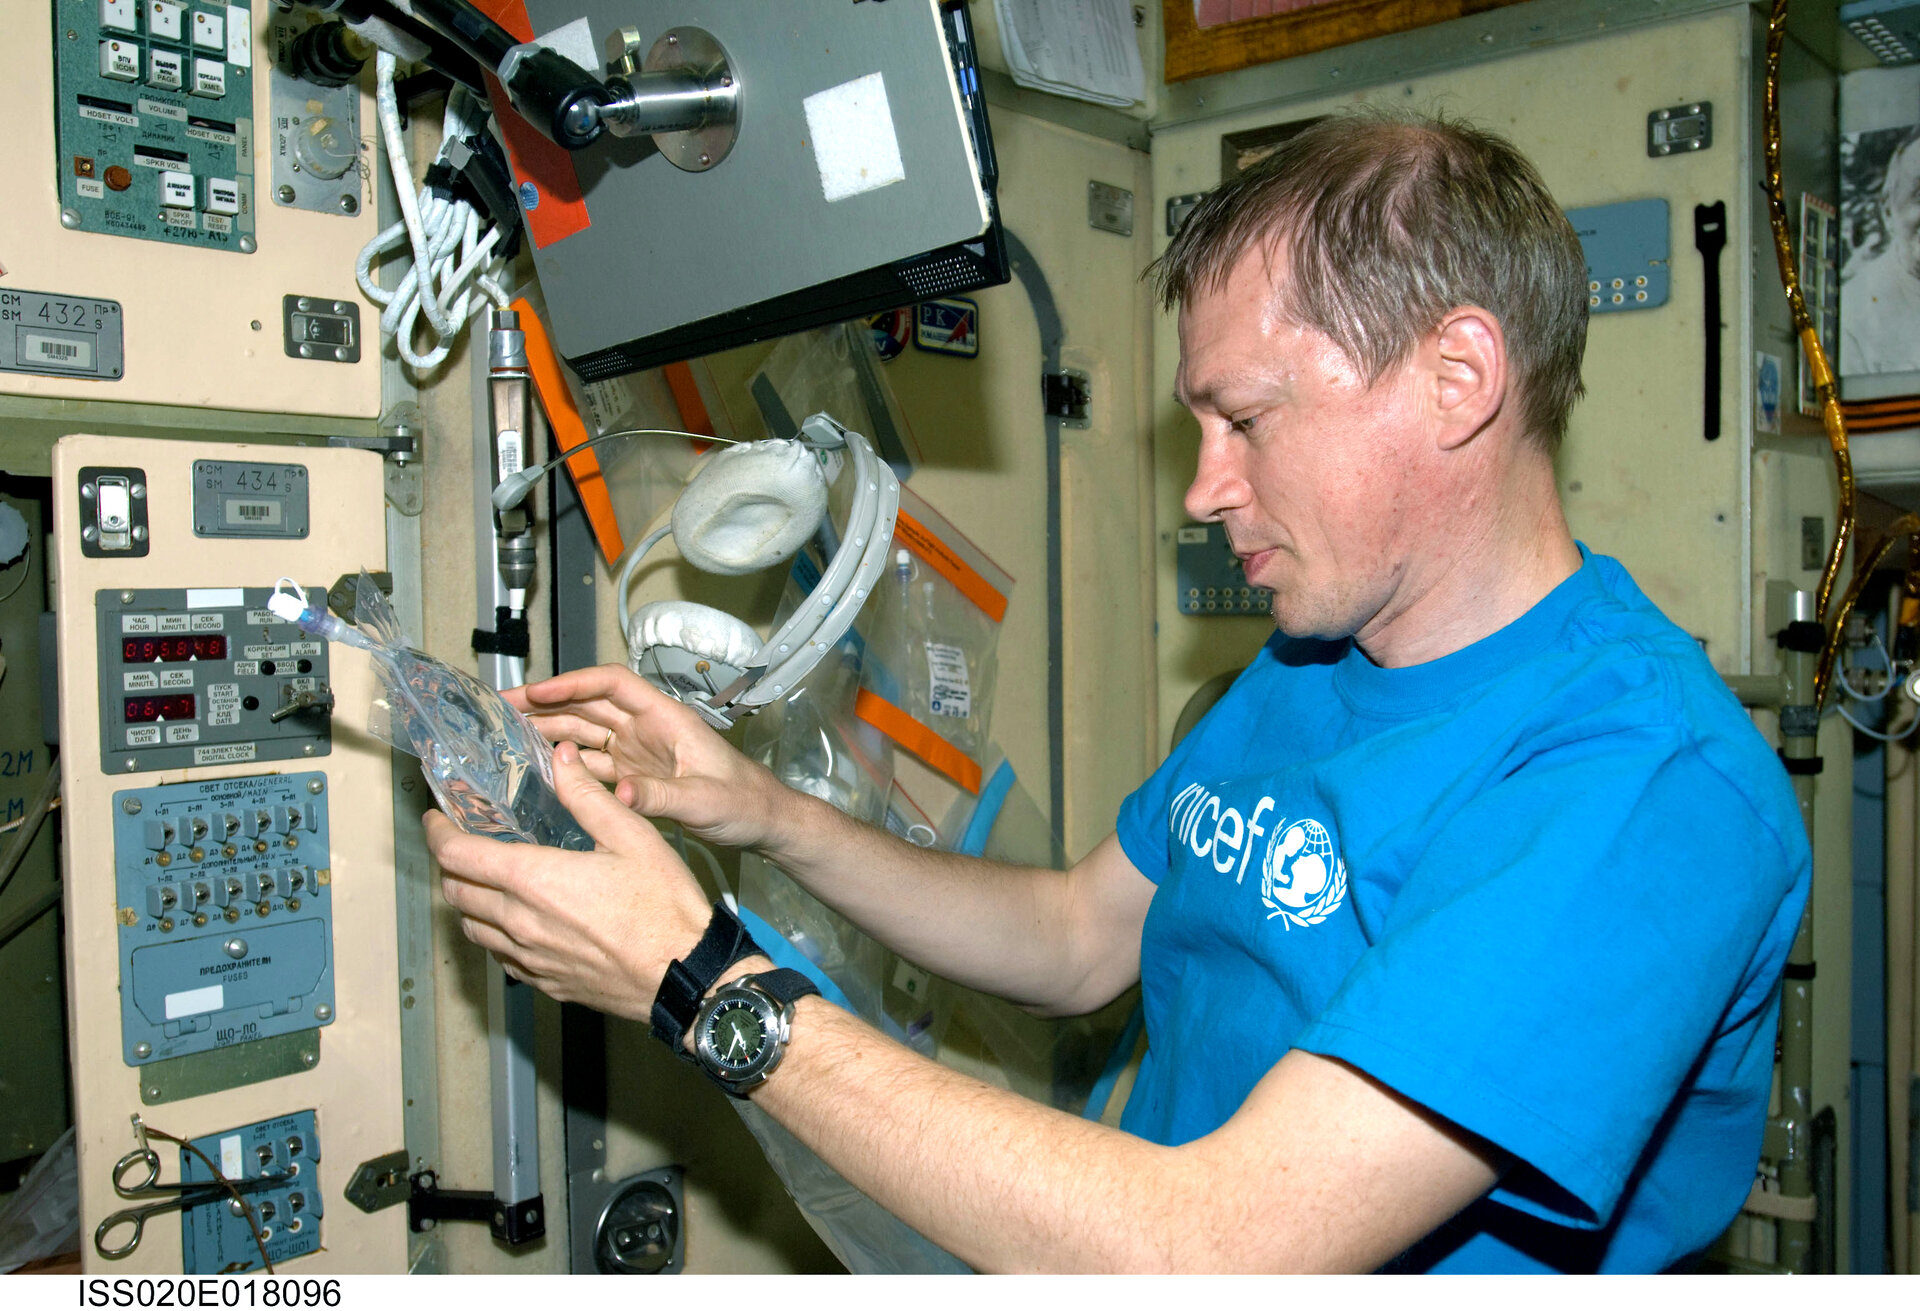 L’astronaute belge en train de récolter des échantillons d’eau à bord de la station